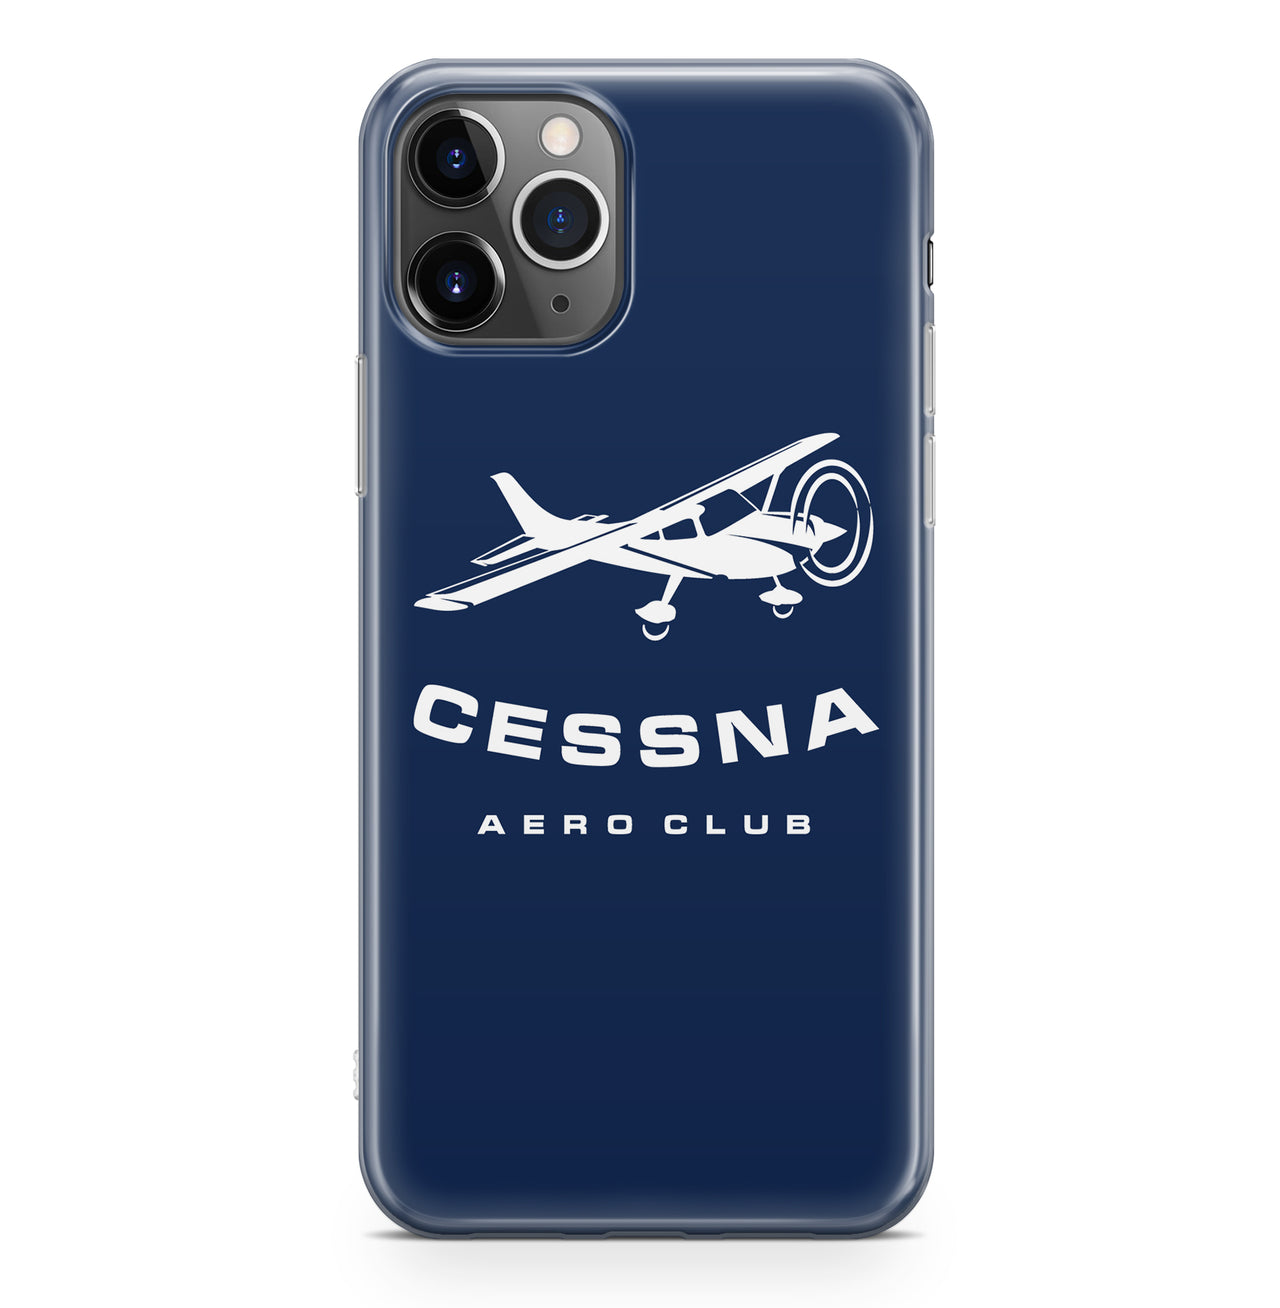 Cessna Aeroclub Designed iPhone Cases